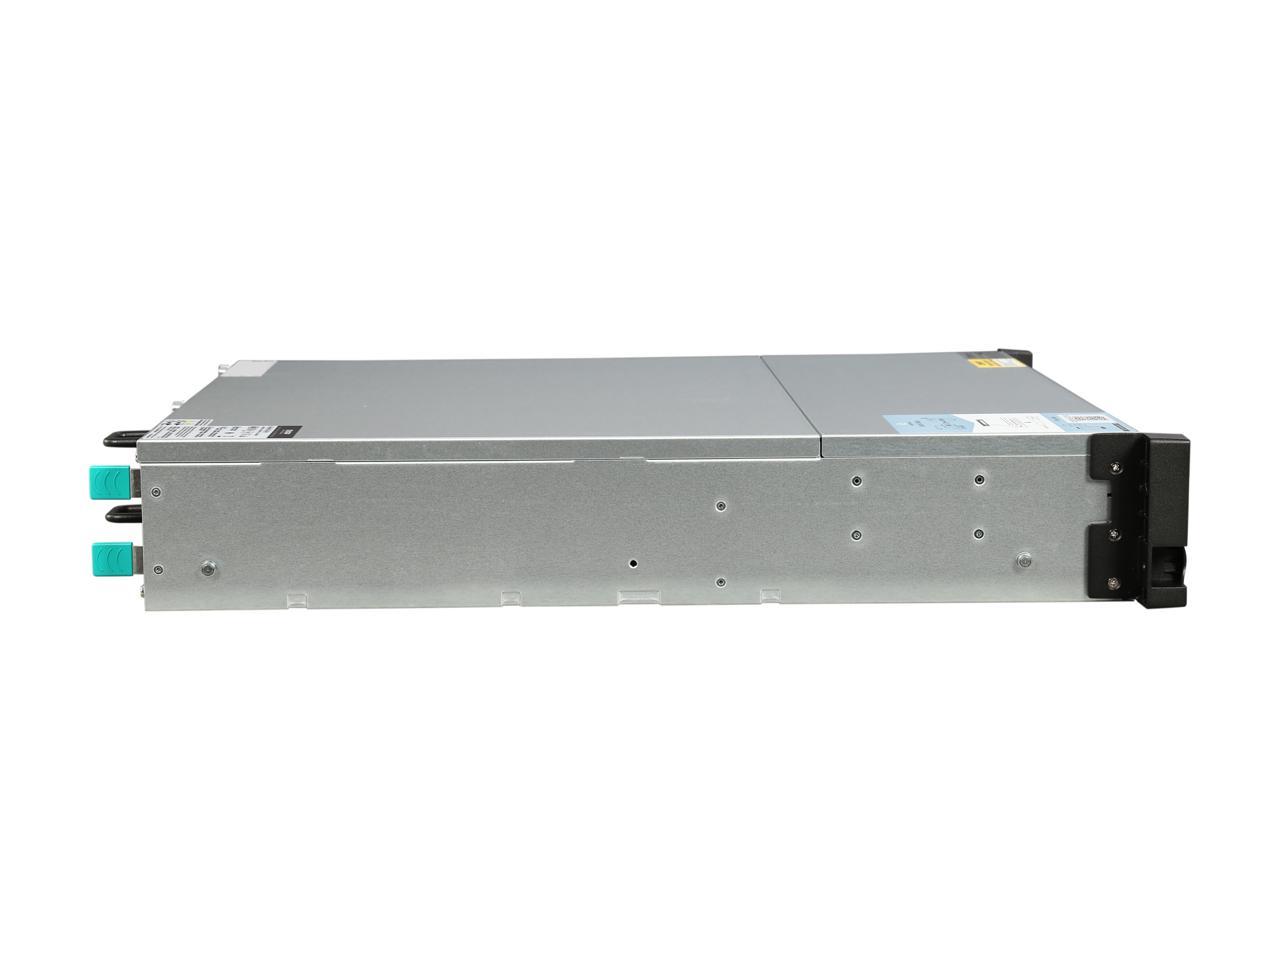 QNAP TS-873U-RP-16G-US 2U 8-Bay NAS/iSCSI IP-SAN, 10GbE, Redundant PSU